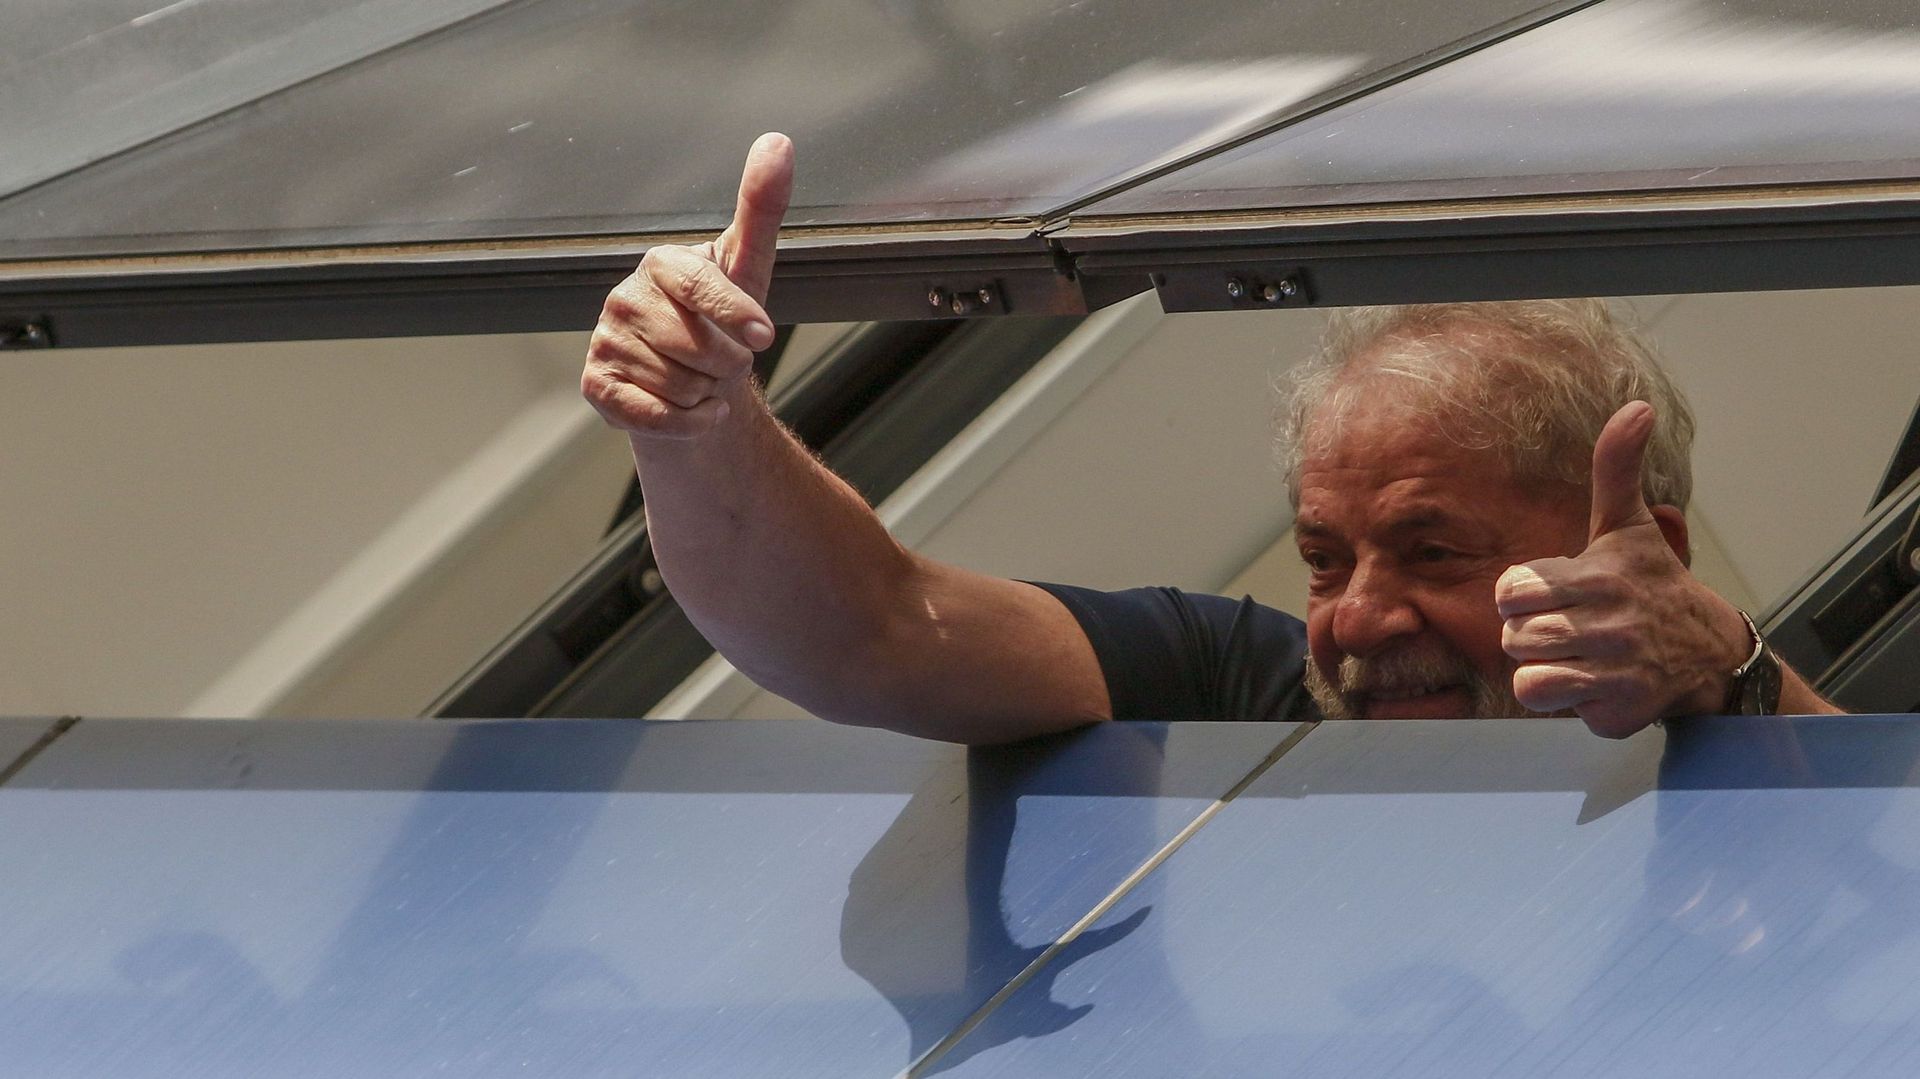 Brésil: l'ordre de libération de Lula annulée par un juge, l'ex-président reste en prison